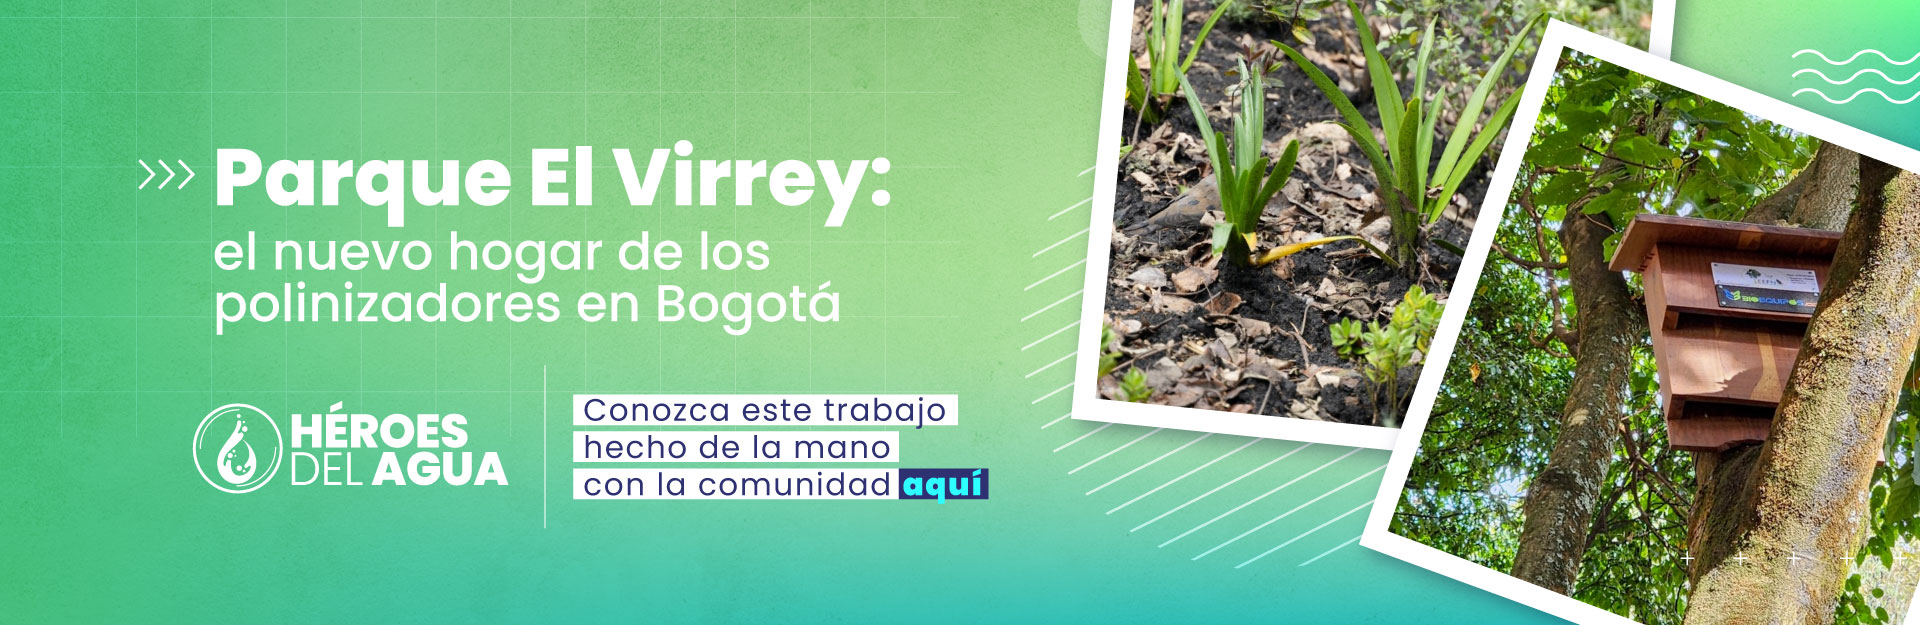 Parque El Virrey: el nuevo hogar de los polinizadores en Bogotá